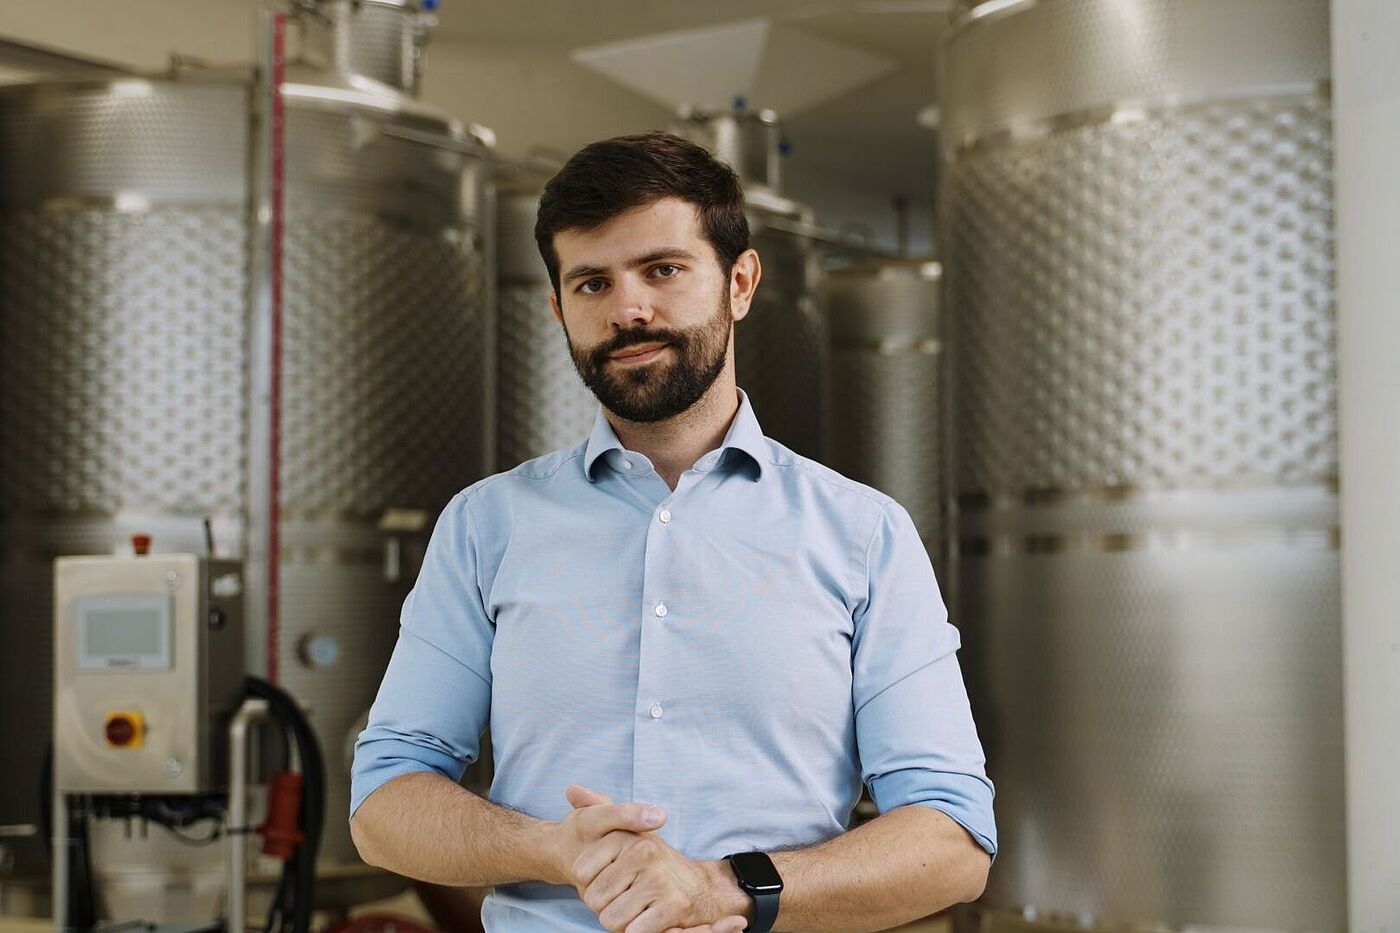 Marco Cescon, Eigentümer und Weinhersteller, Mani Sagge, San Pietro di Feletto, Treviso, Italien